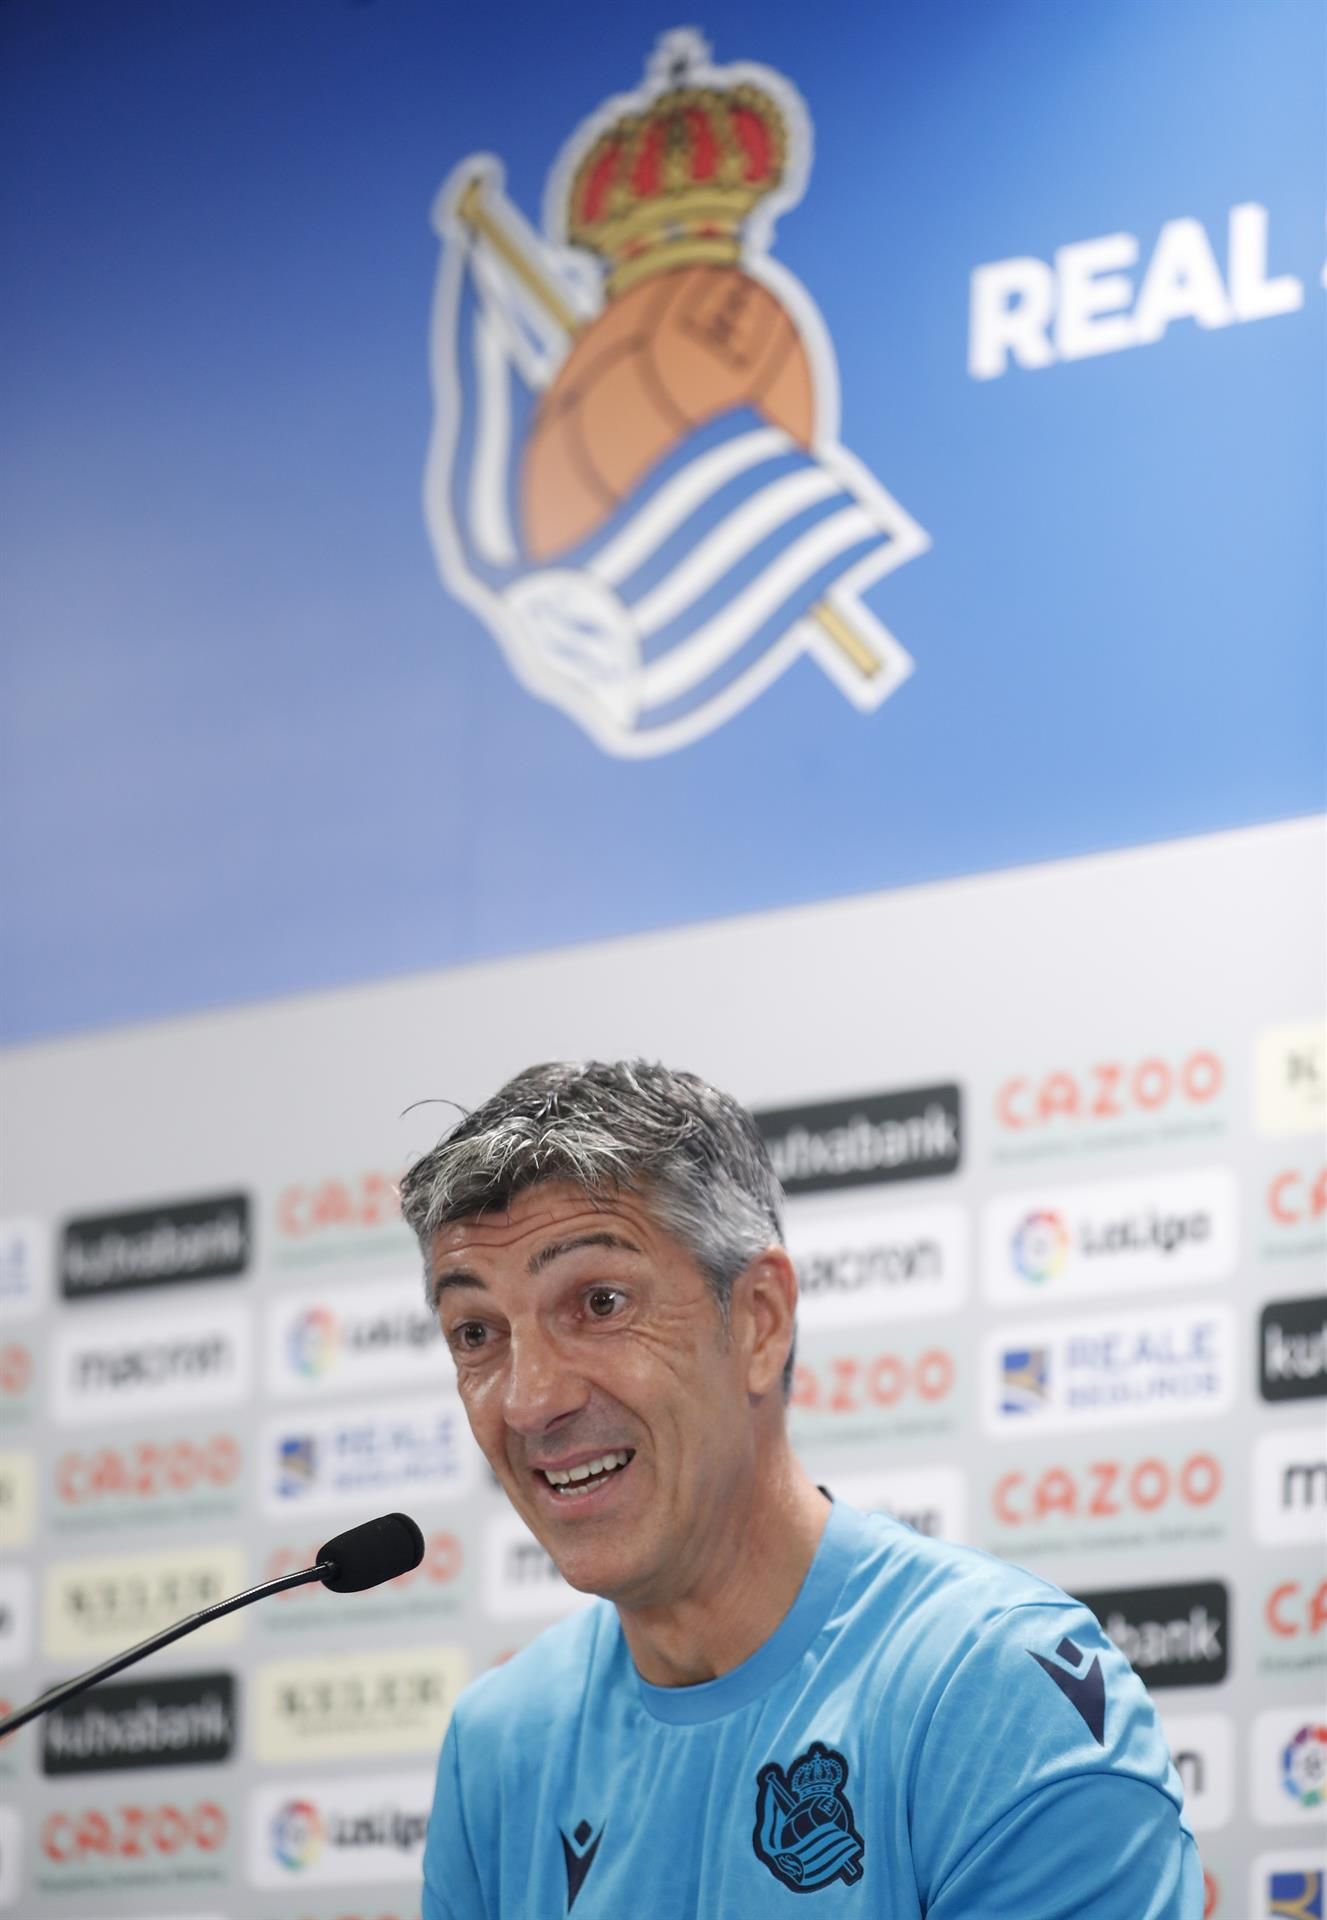 El entrenador de la Real Sociedad Imanol Alguacil, ofrece este viernes una conferencia de prensa previa al partido que disputará contra el Girona. EFE/Juan Herrero.
